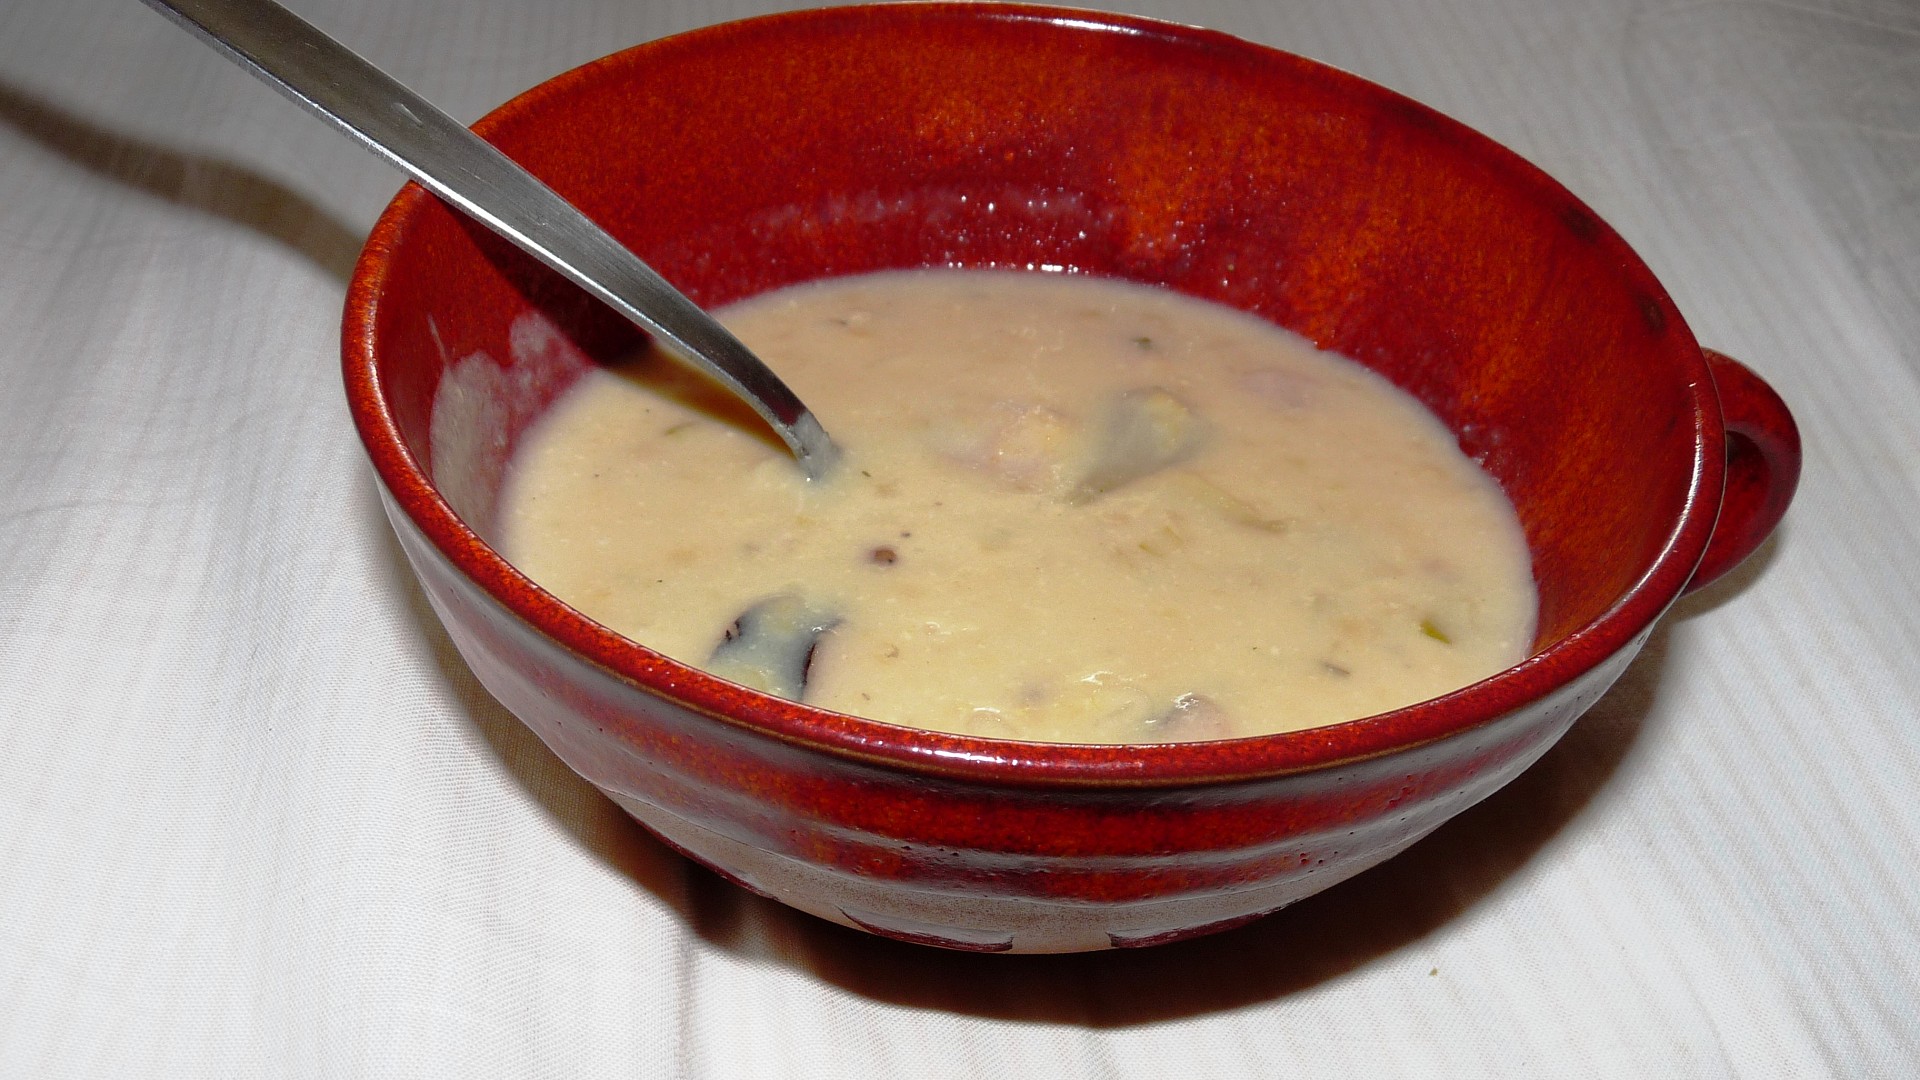 Čočková polévka s vaječným koňakem podle Tejajky